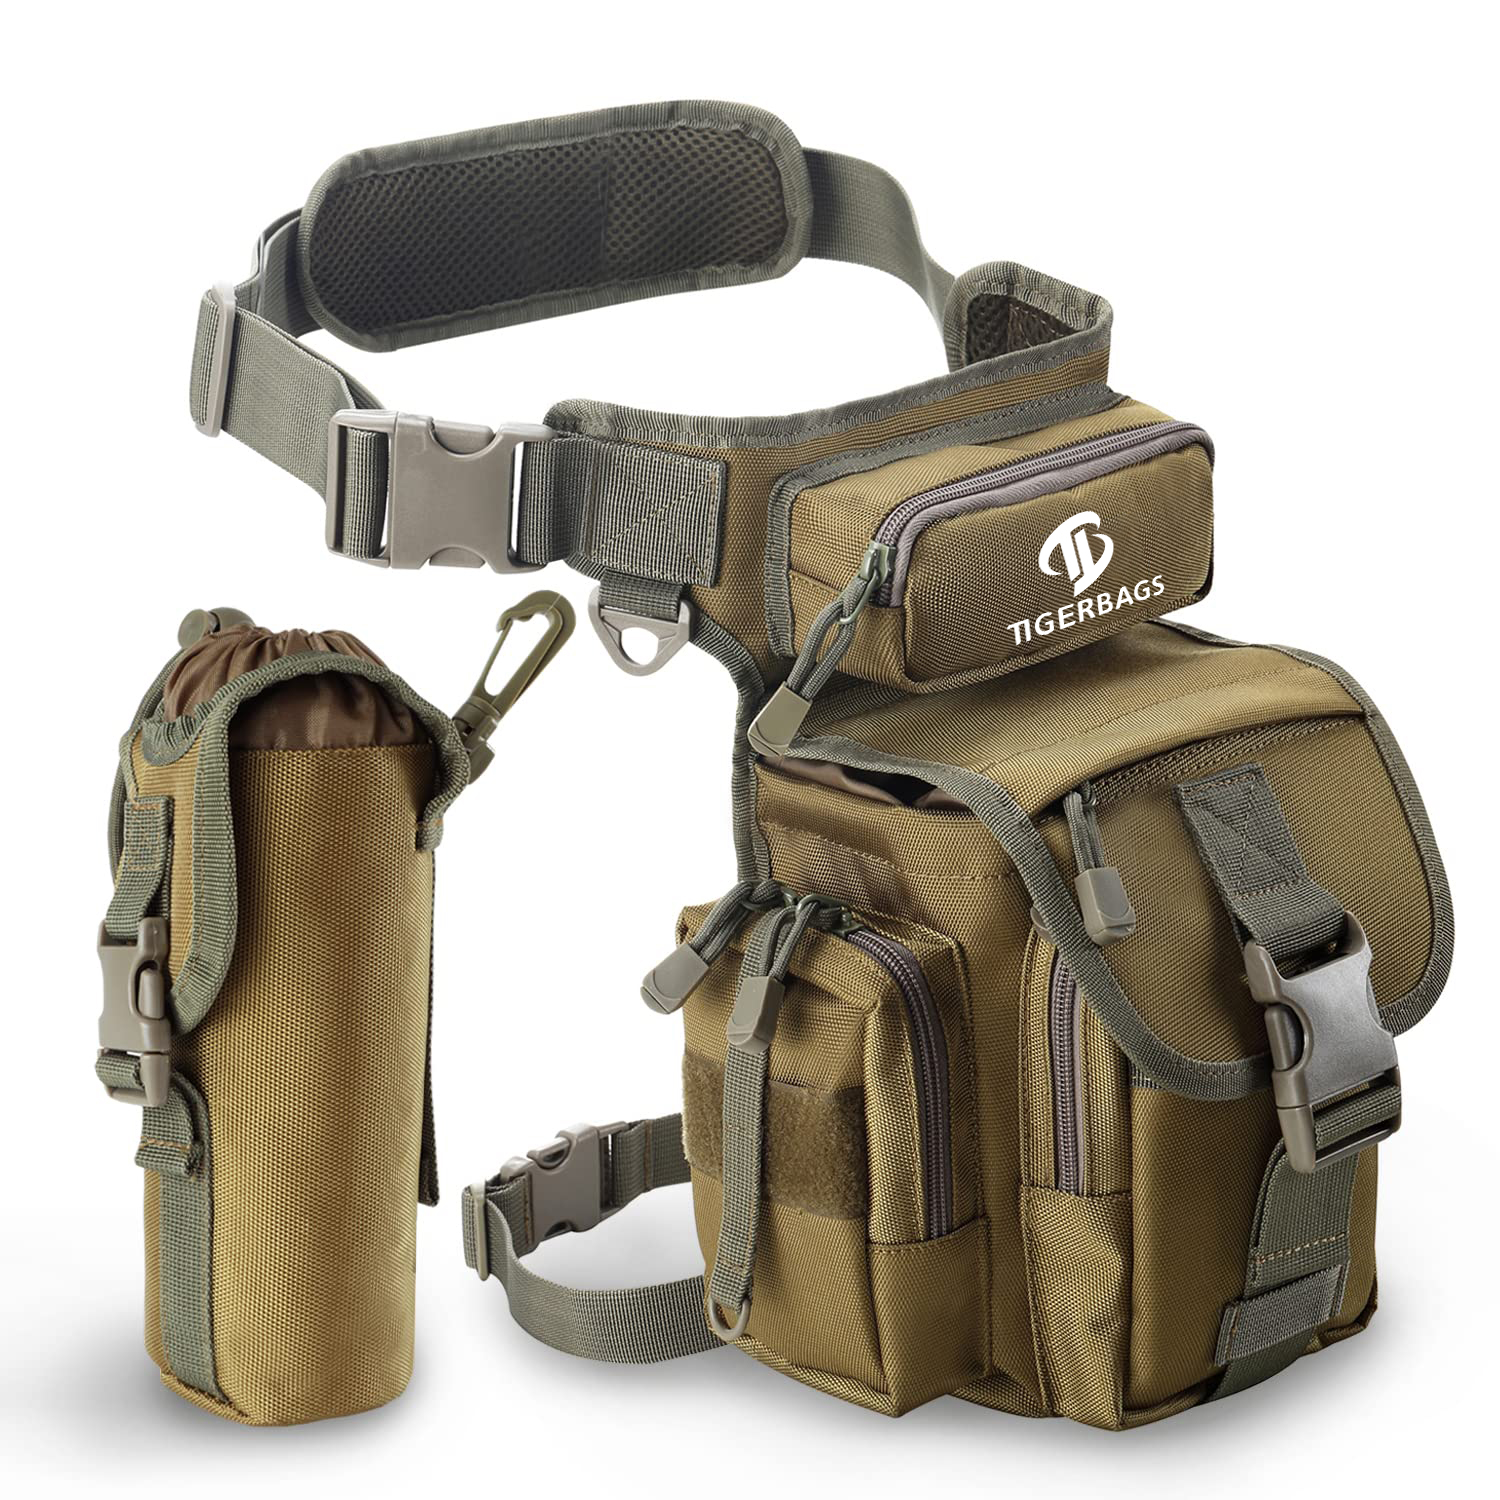 Szakadásálló egyszínű, nem könnyen fakulható nylon Tactical Drop Leg Pouch Bag